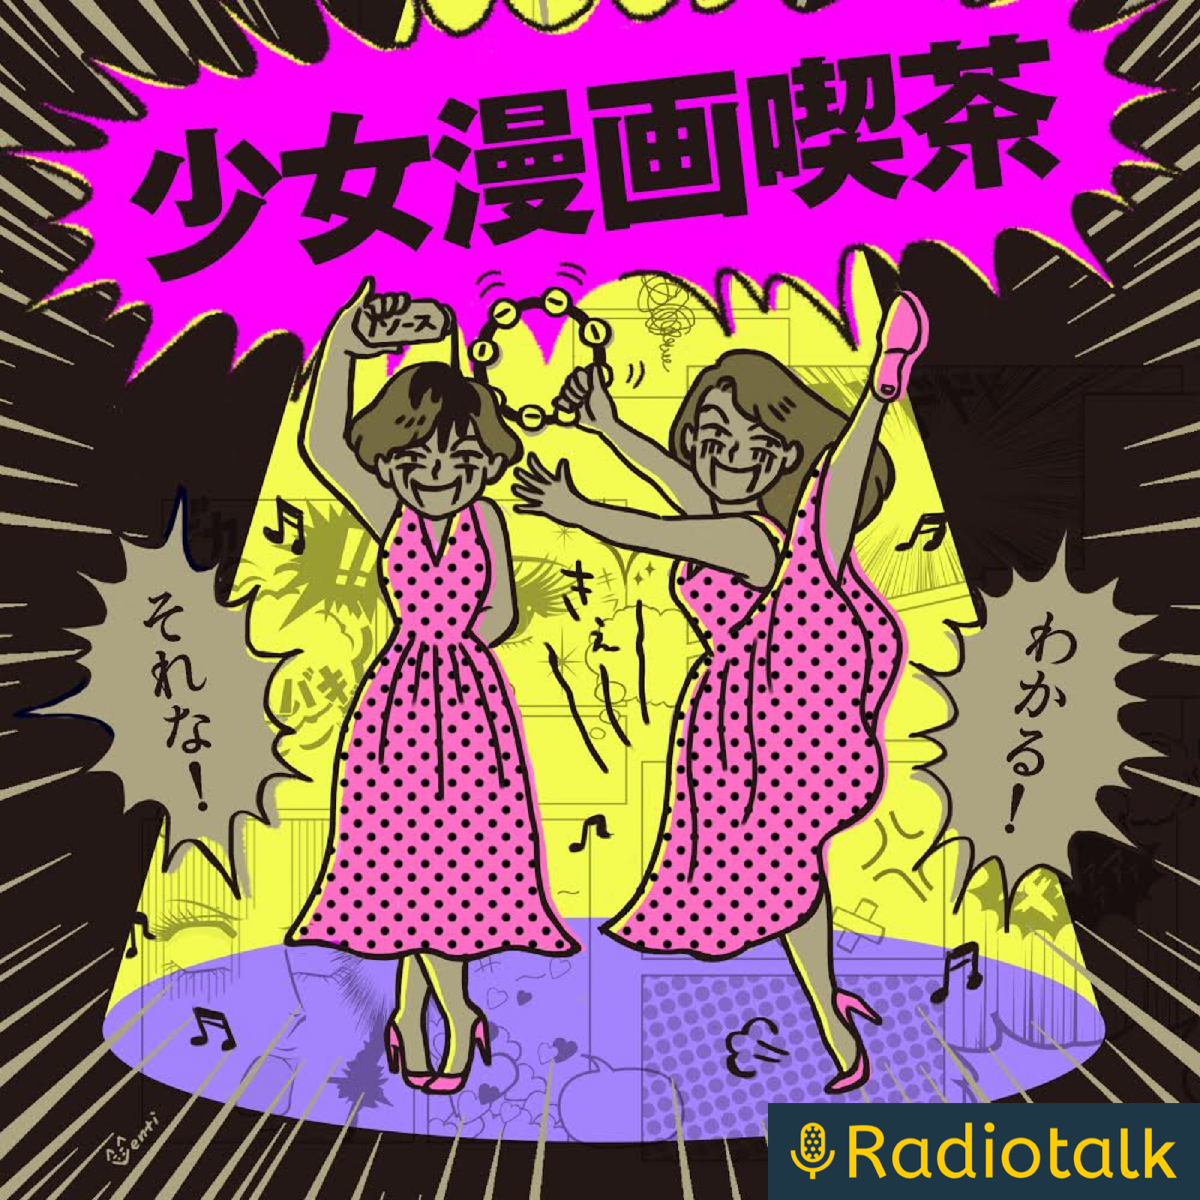 少女漫画喫茶 Podcast Itunes台灣